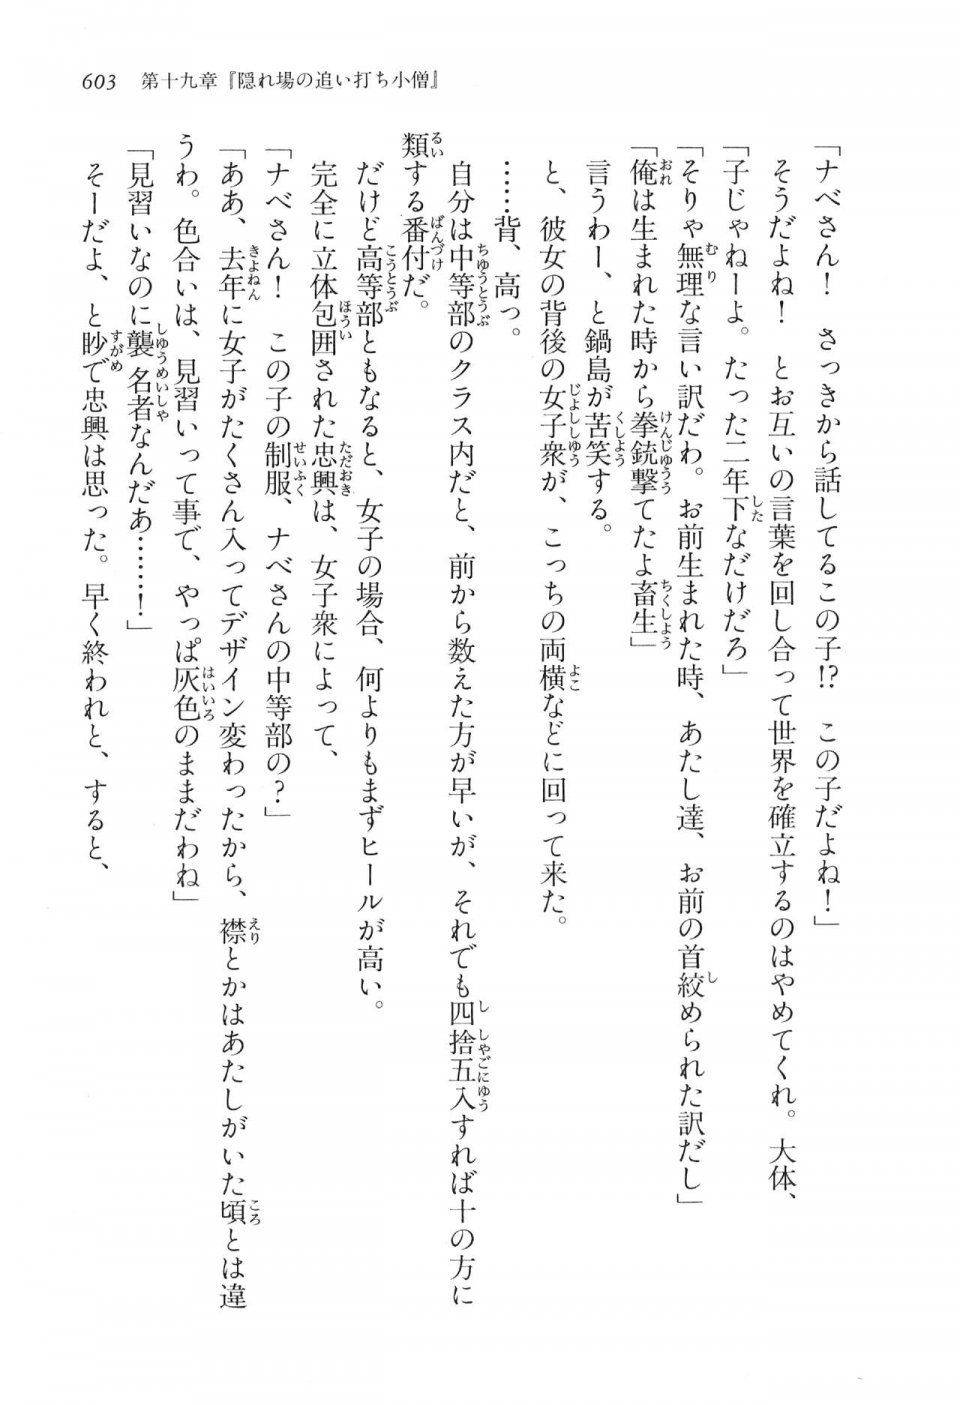 Kyoukai Senjou no Horizon LN Vol 16(7A) - Photo #603